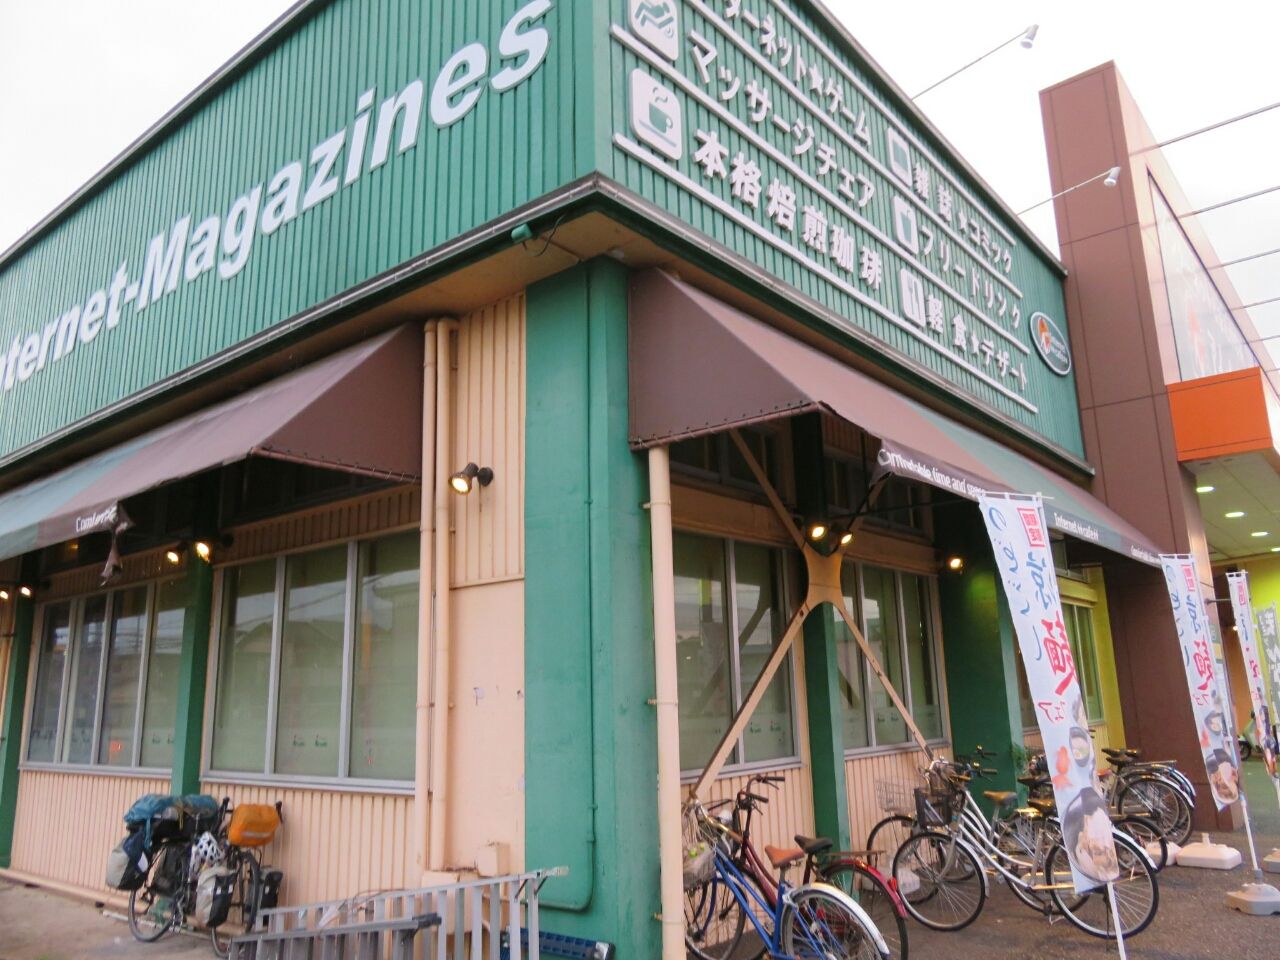 93日目 ネットカフェ アイカフェ 埼玉県 大宮駅 石川県 金沢市 自転車故障のため旅を一時中断します トミーのちょっと自転車日本一周 4月24に出発しました